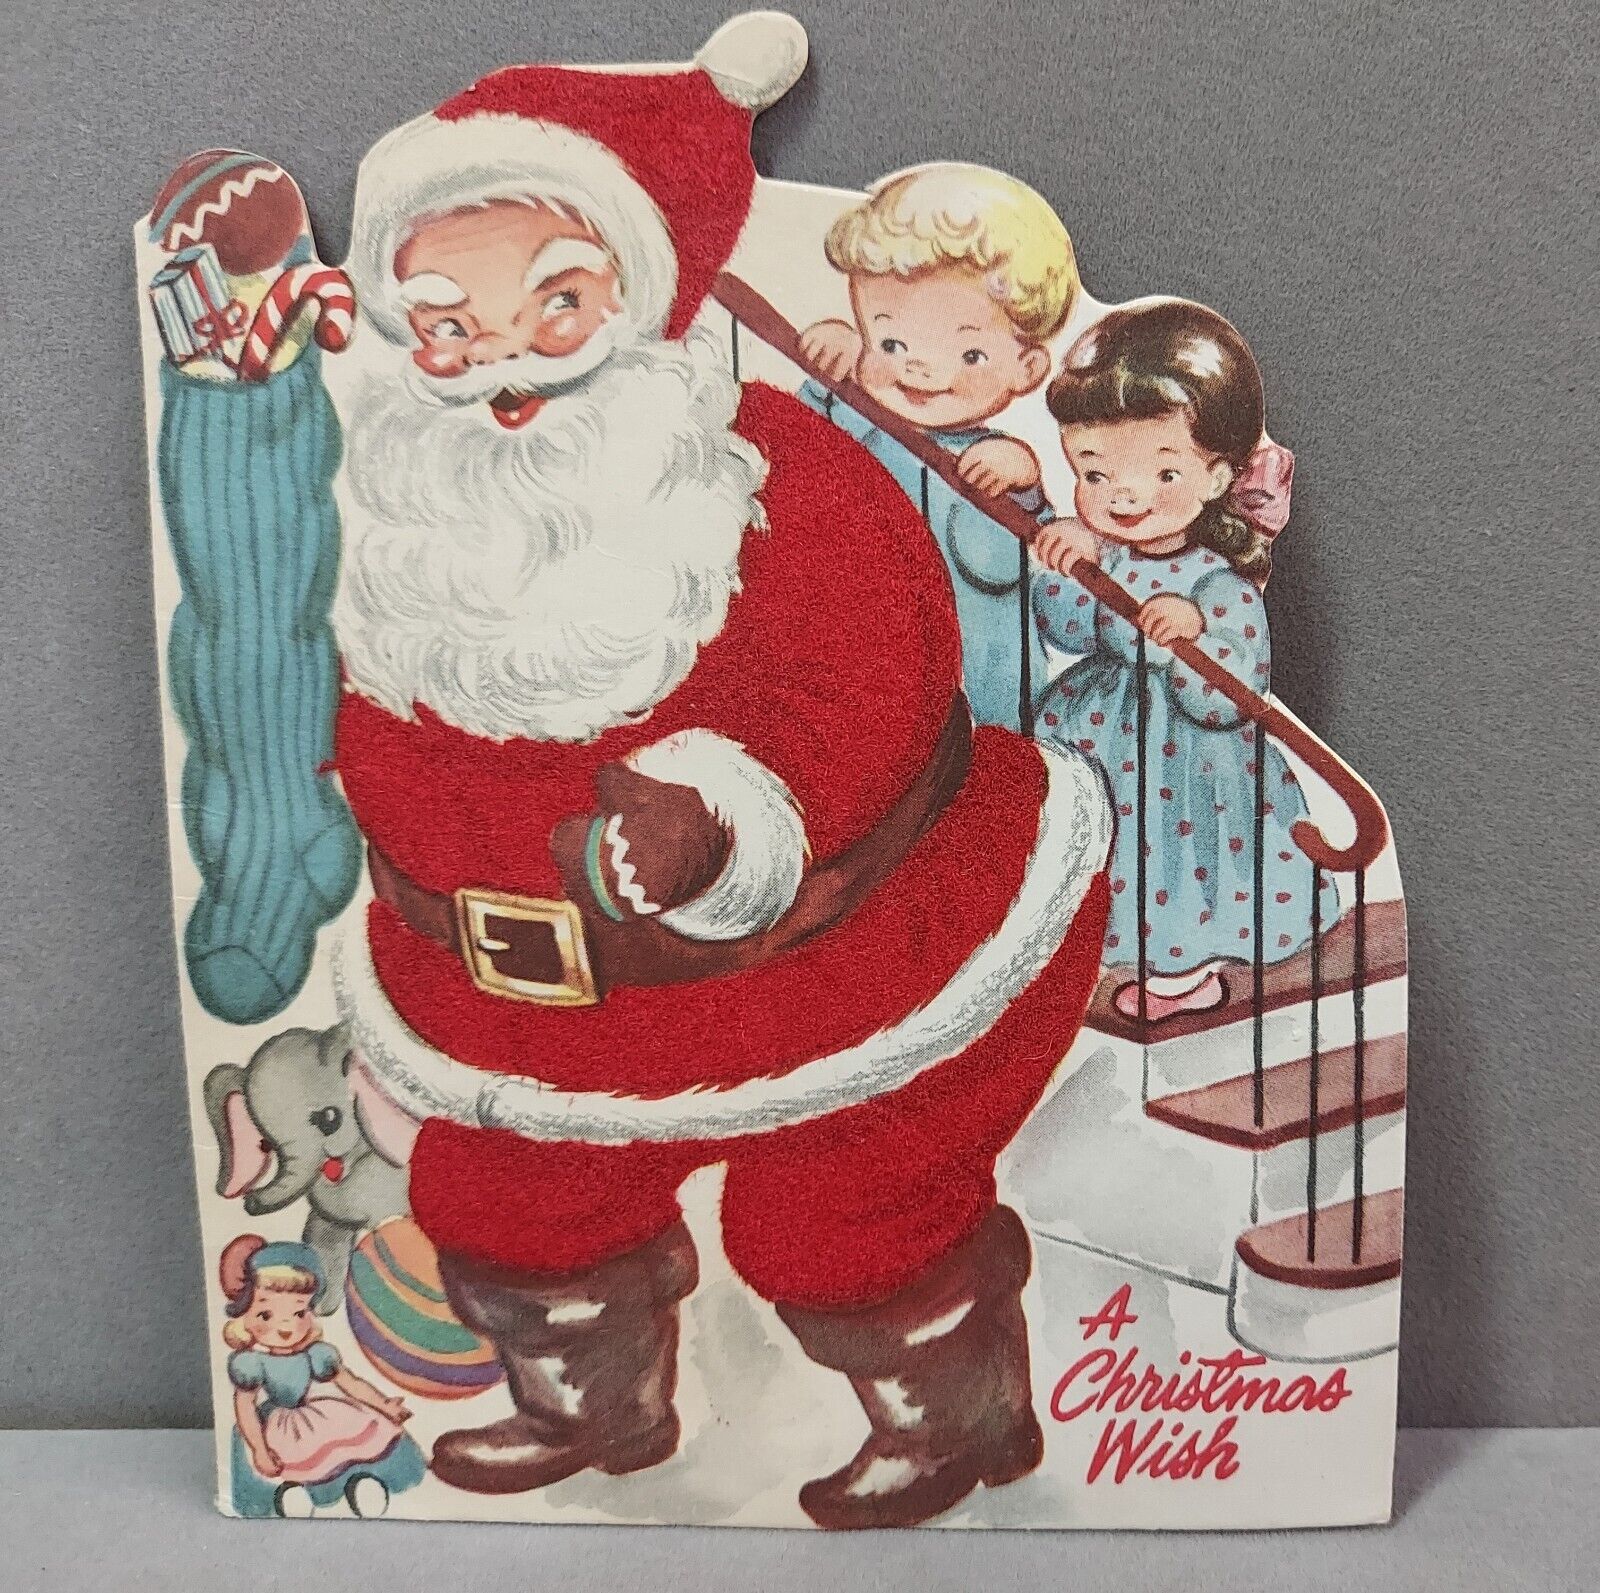 Vintage Die Cut Christmas Card 1950s Flocked Santa Christmas Wish Used Whit Card